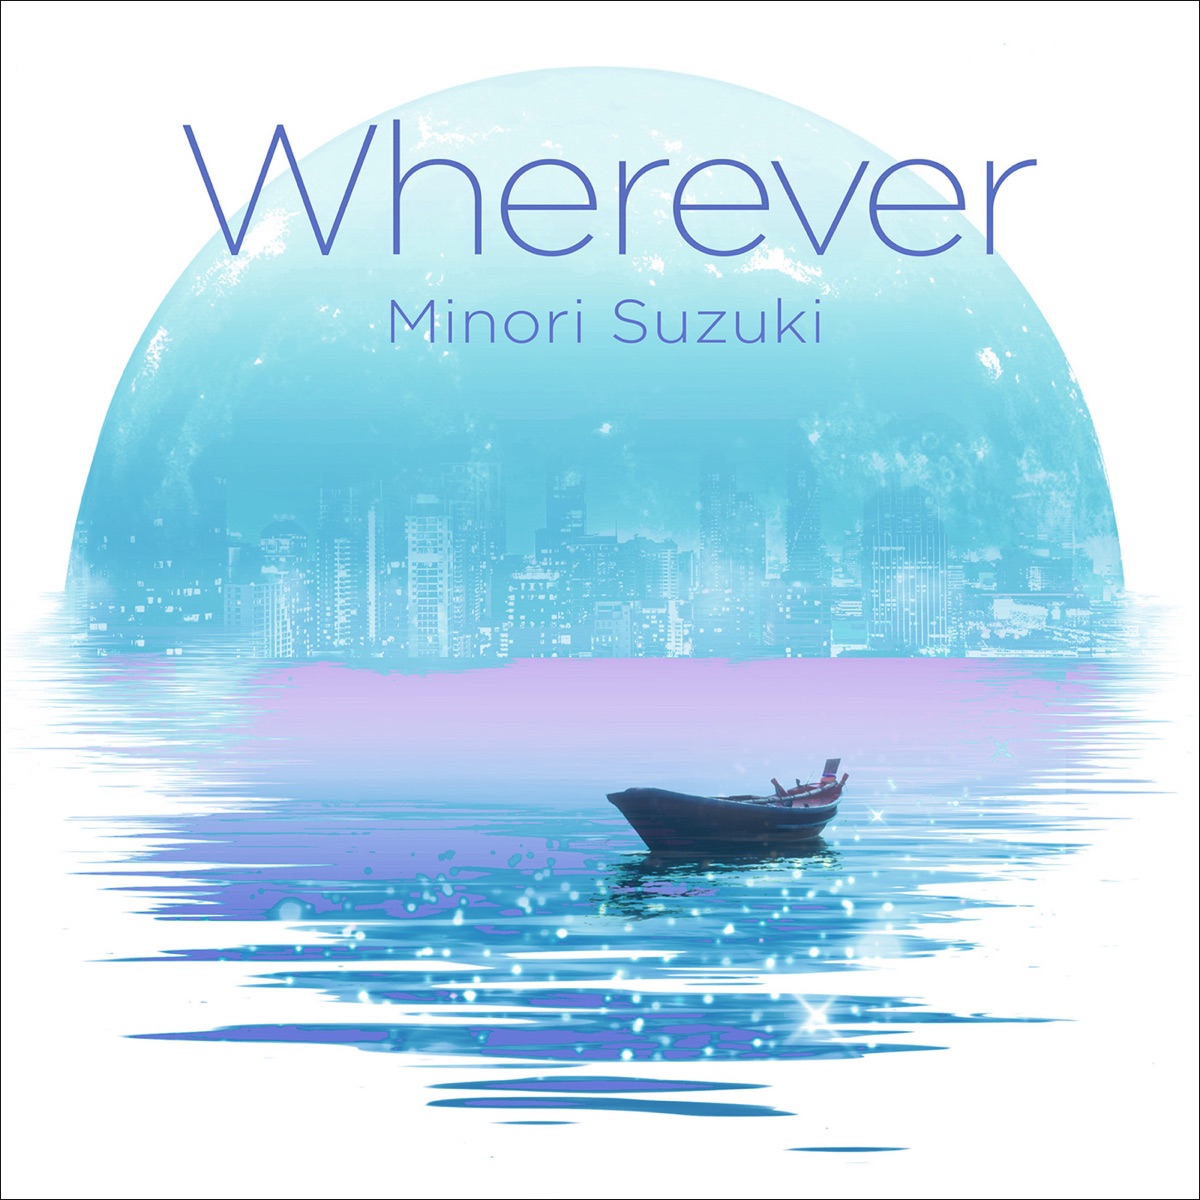 Cover art for『Minori Suzuki - Wherever』from the release『Wherever